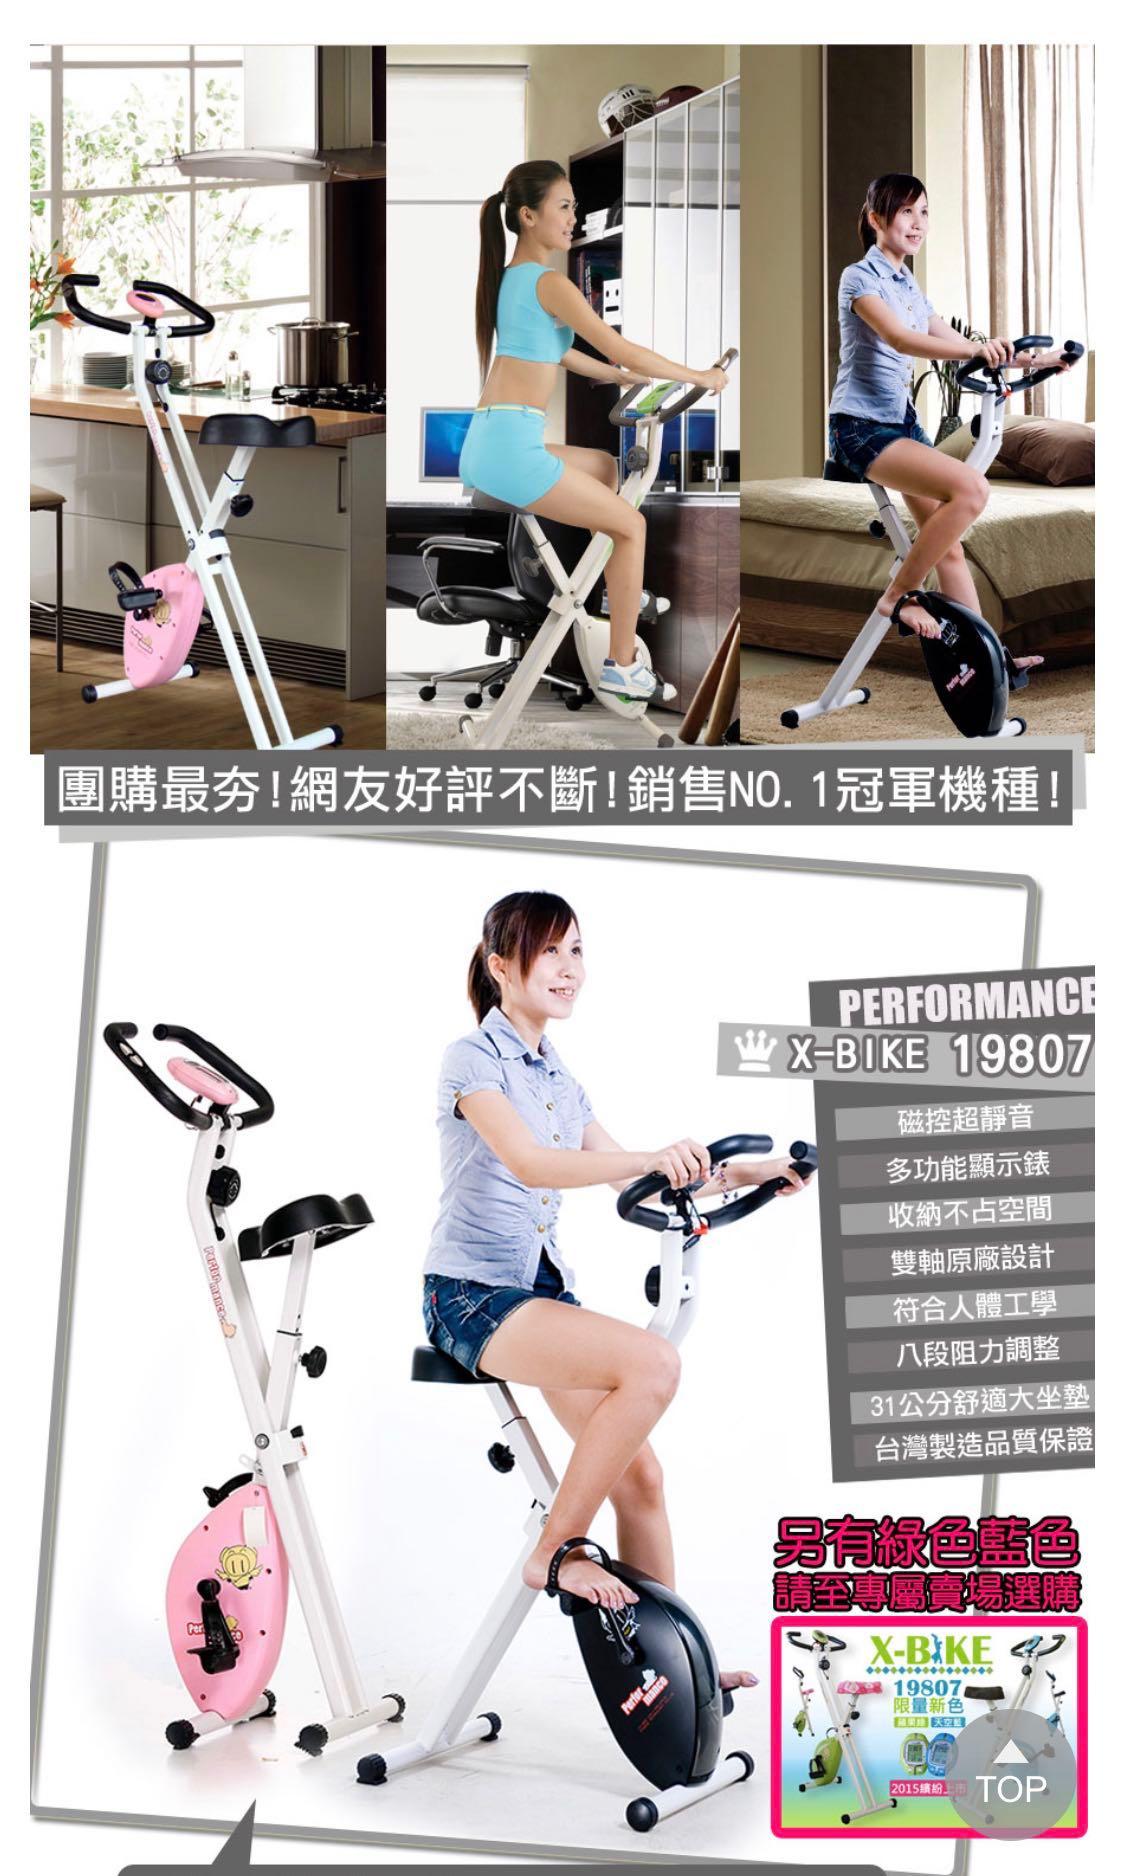 團購熱賣居家健身儀器櫻花粉X-bike磁控健身車腳踏車 型號19807 照片瀏覽 2